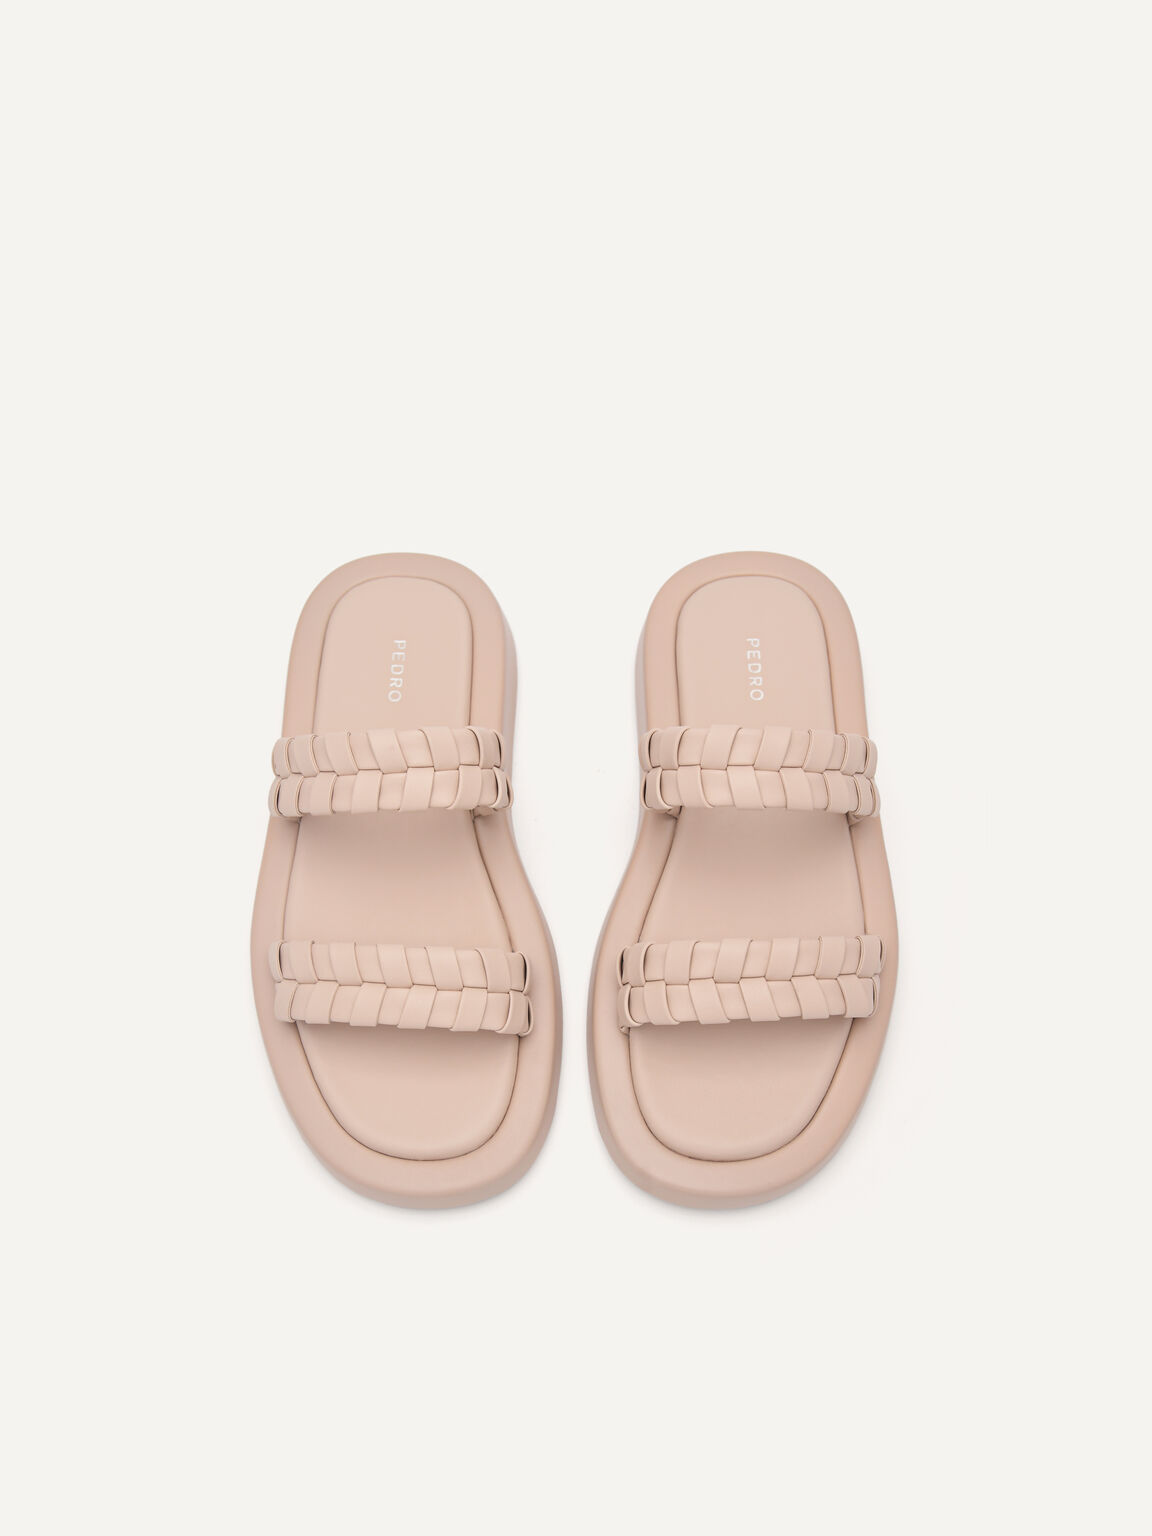 Palma Woven Sandals, Nude, hi-res